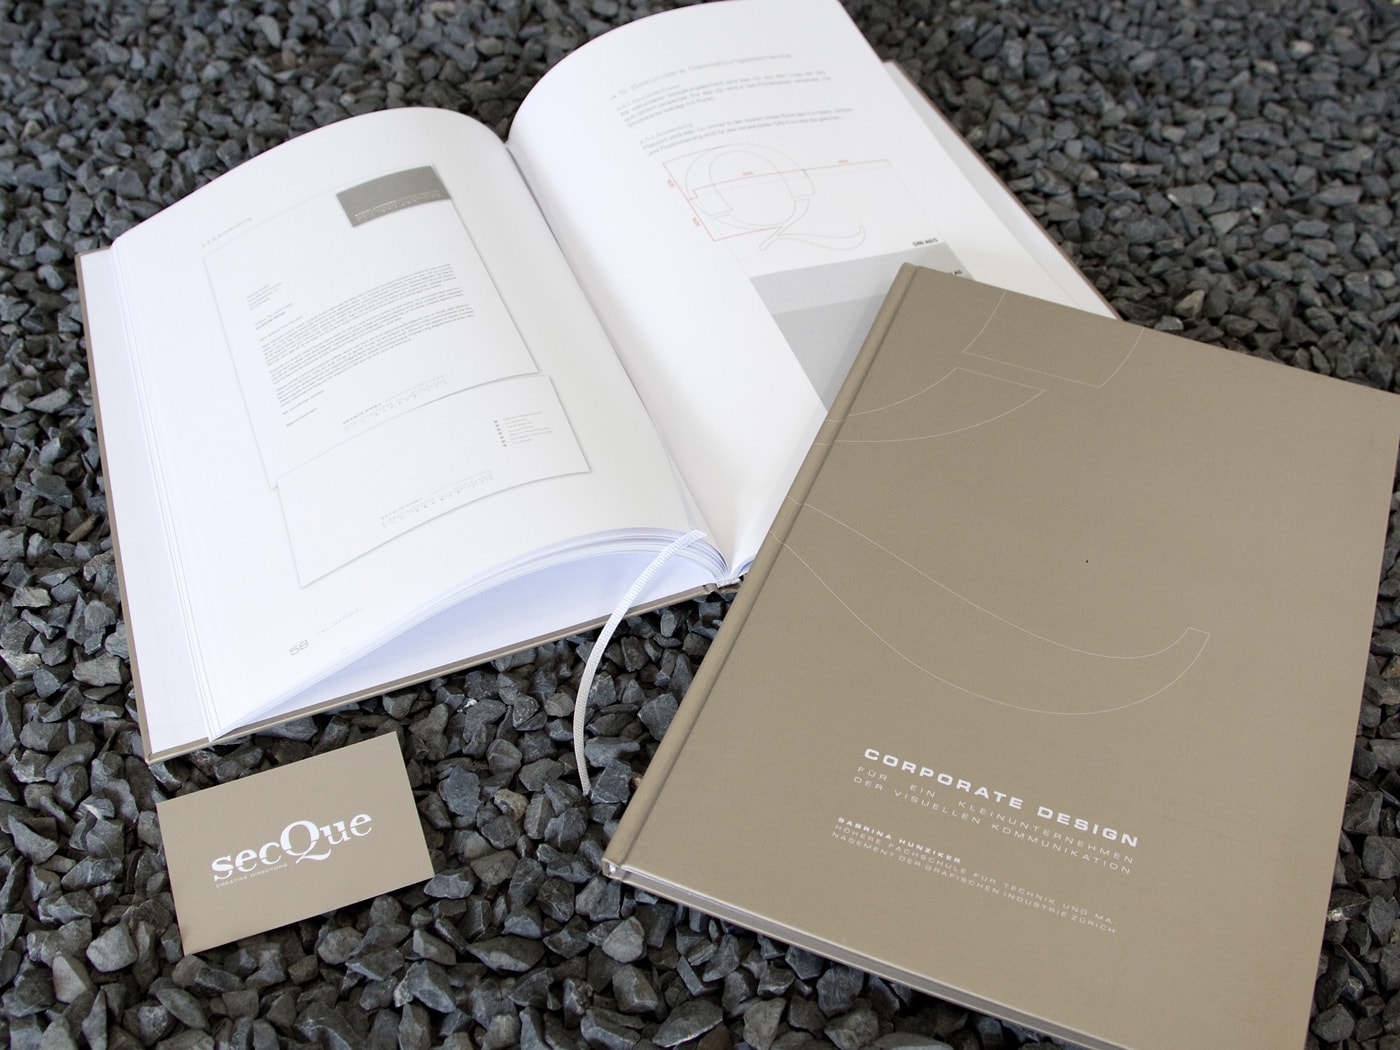 SECQUE Corporate Design Manual